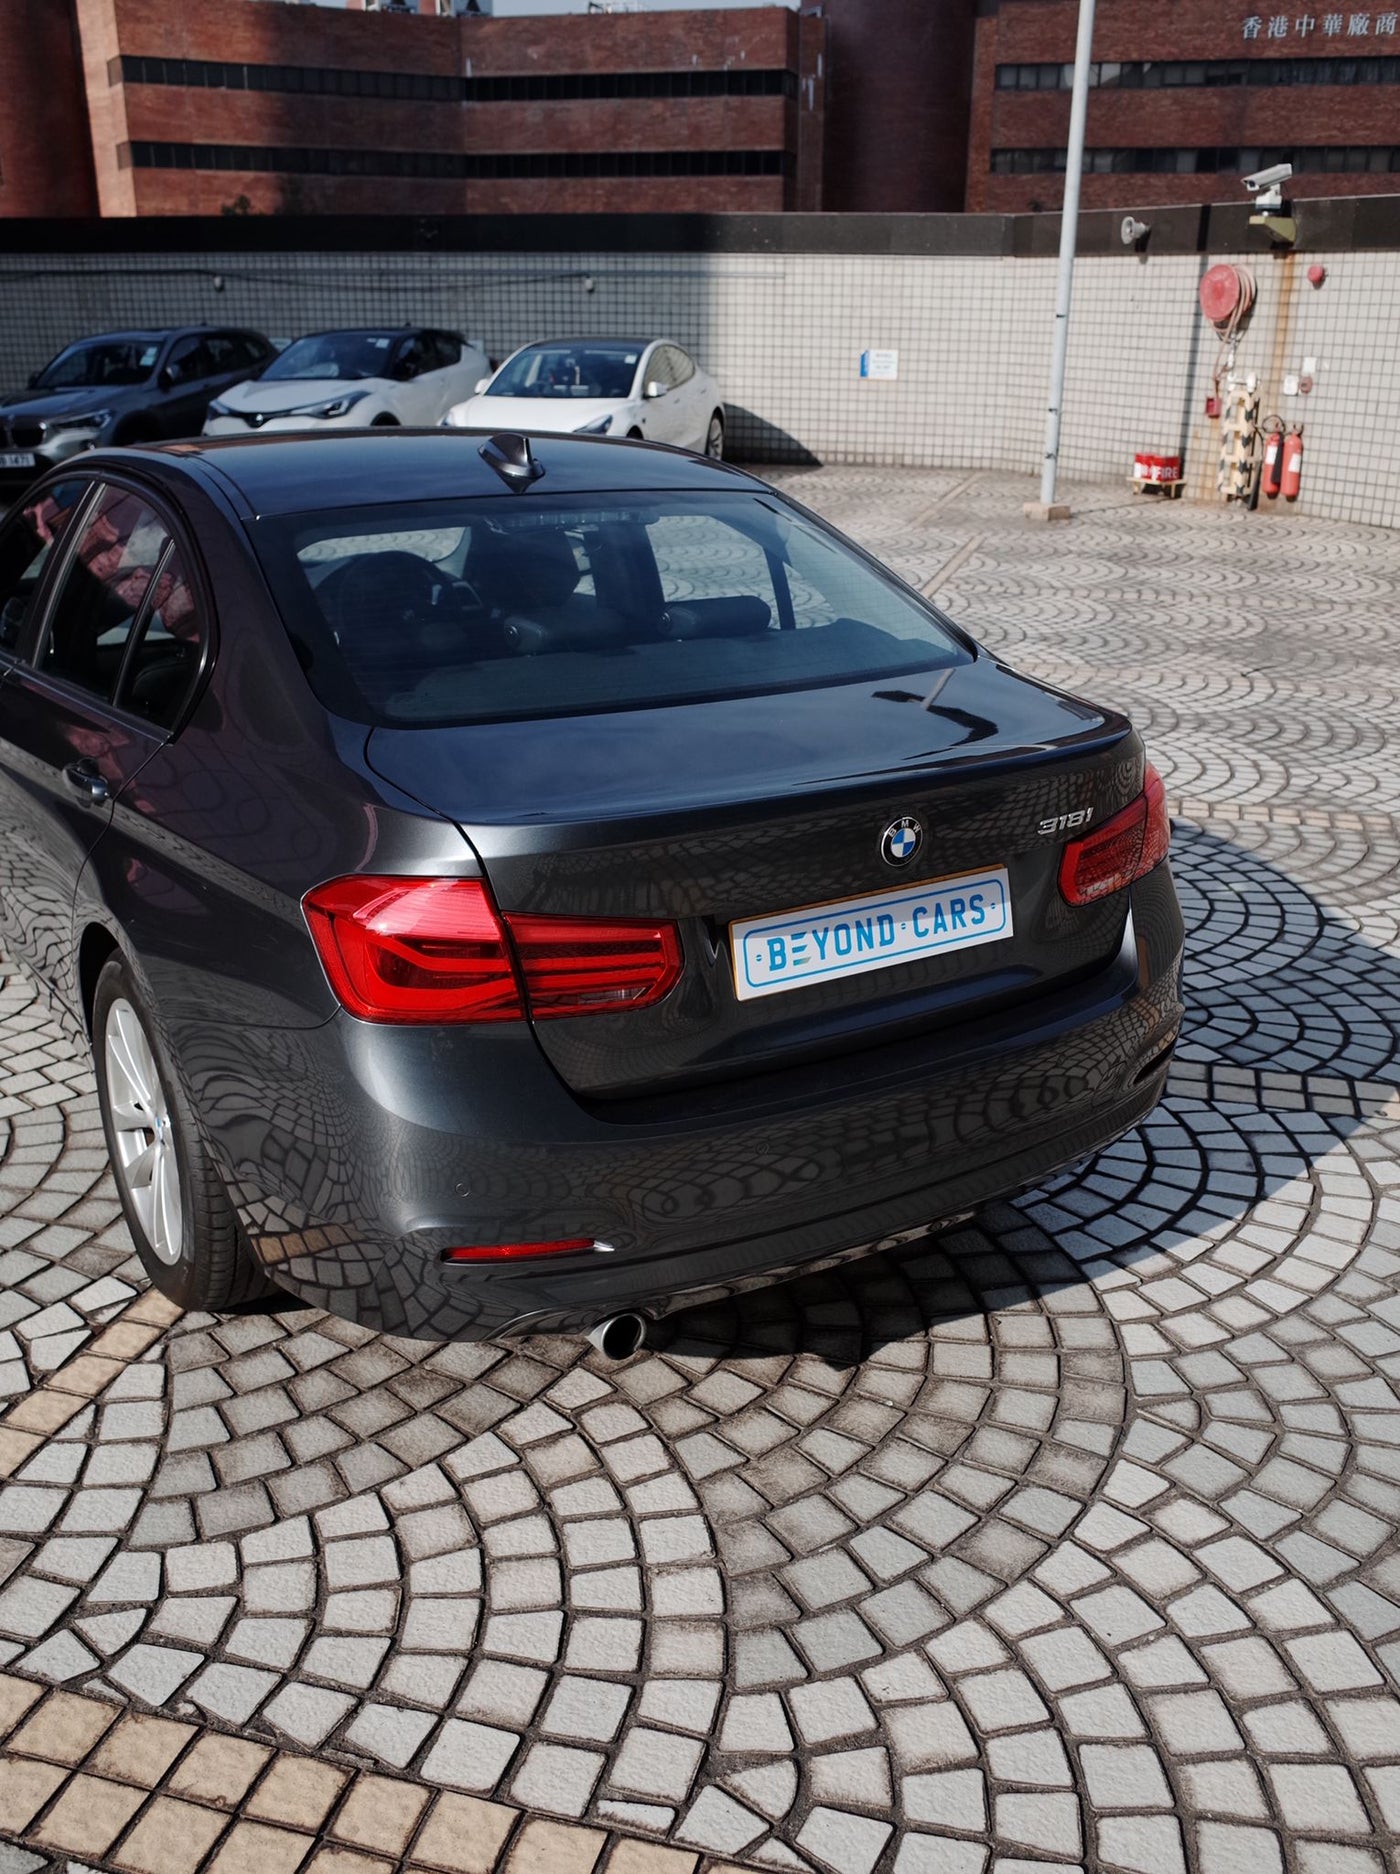 BMW 318i 2016